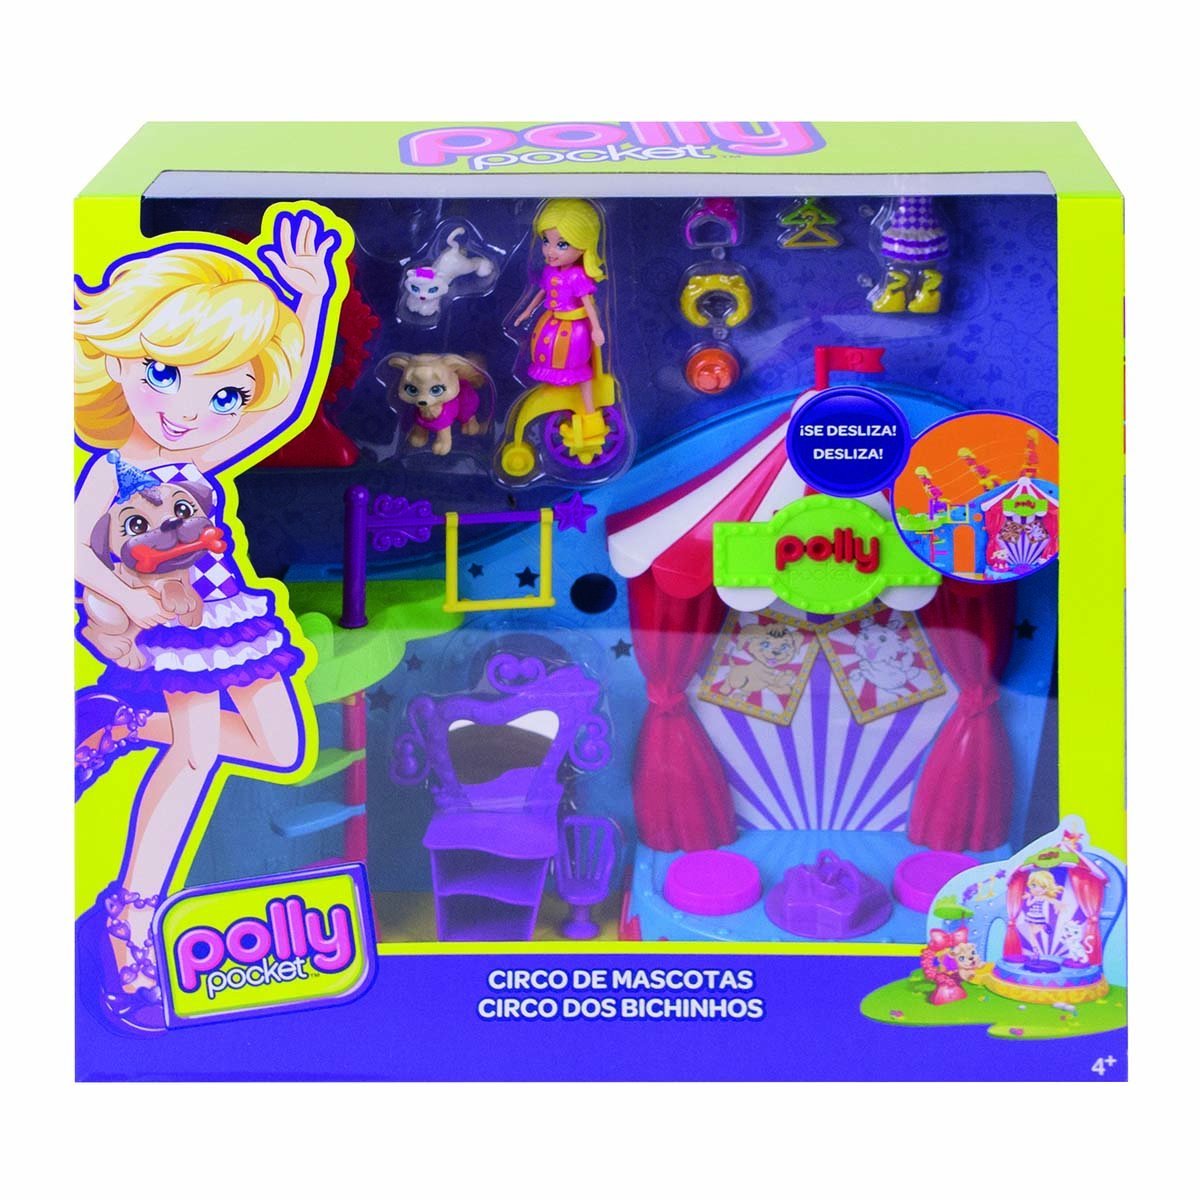 Polly Pocket! Circo de Mascotas Mattel